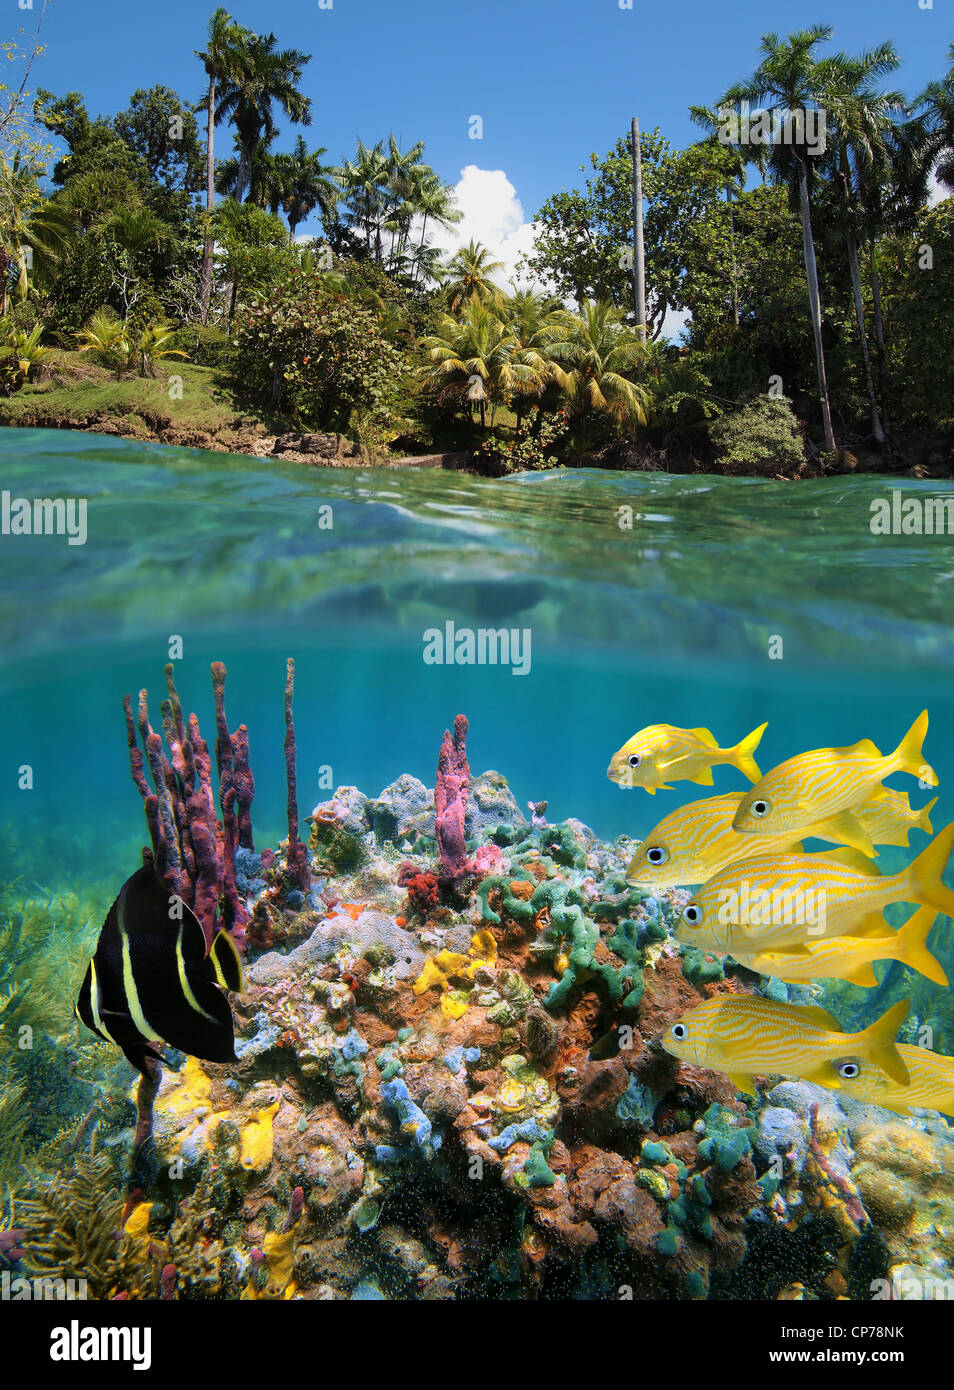 Bunte Unterwasserwelt in einem Korallenriff in der Nähe der tropischen Küste, geteilte Ansicht oberhalb und unterhalb der Wasseroberfläche, Karibik, Mittelamerika, Panama Stockfoto